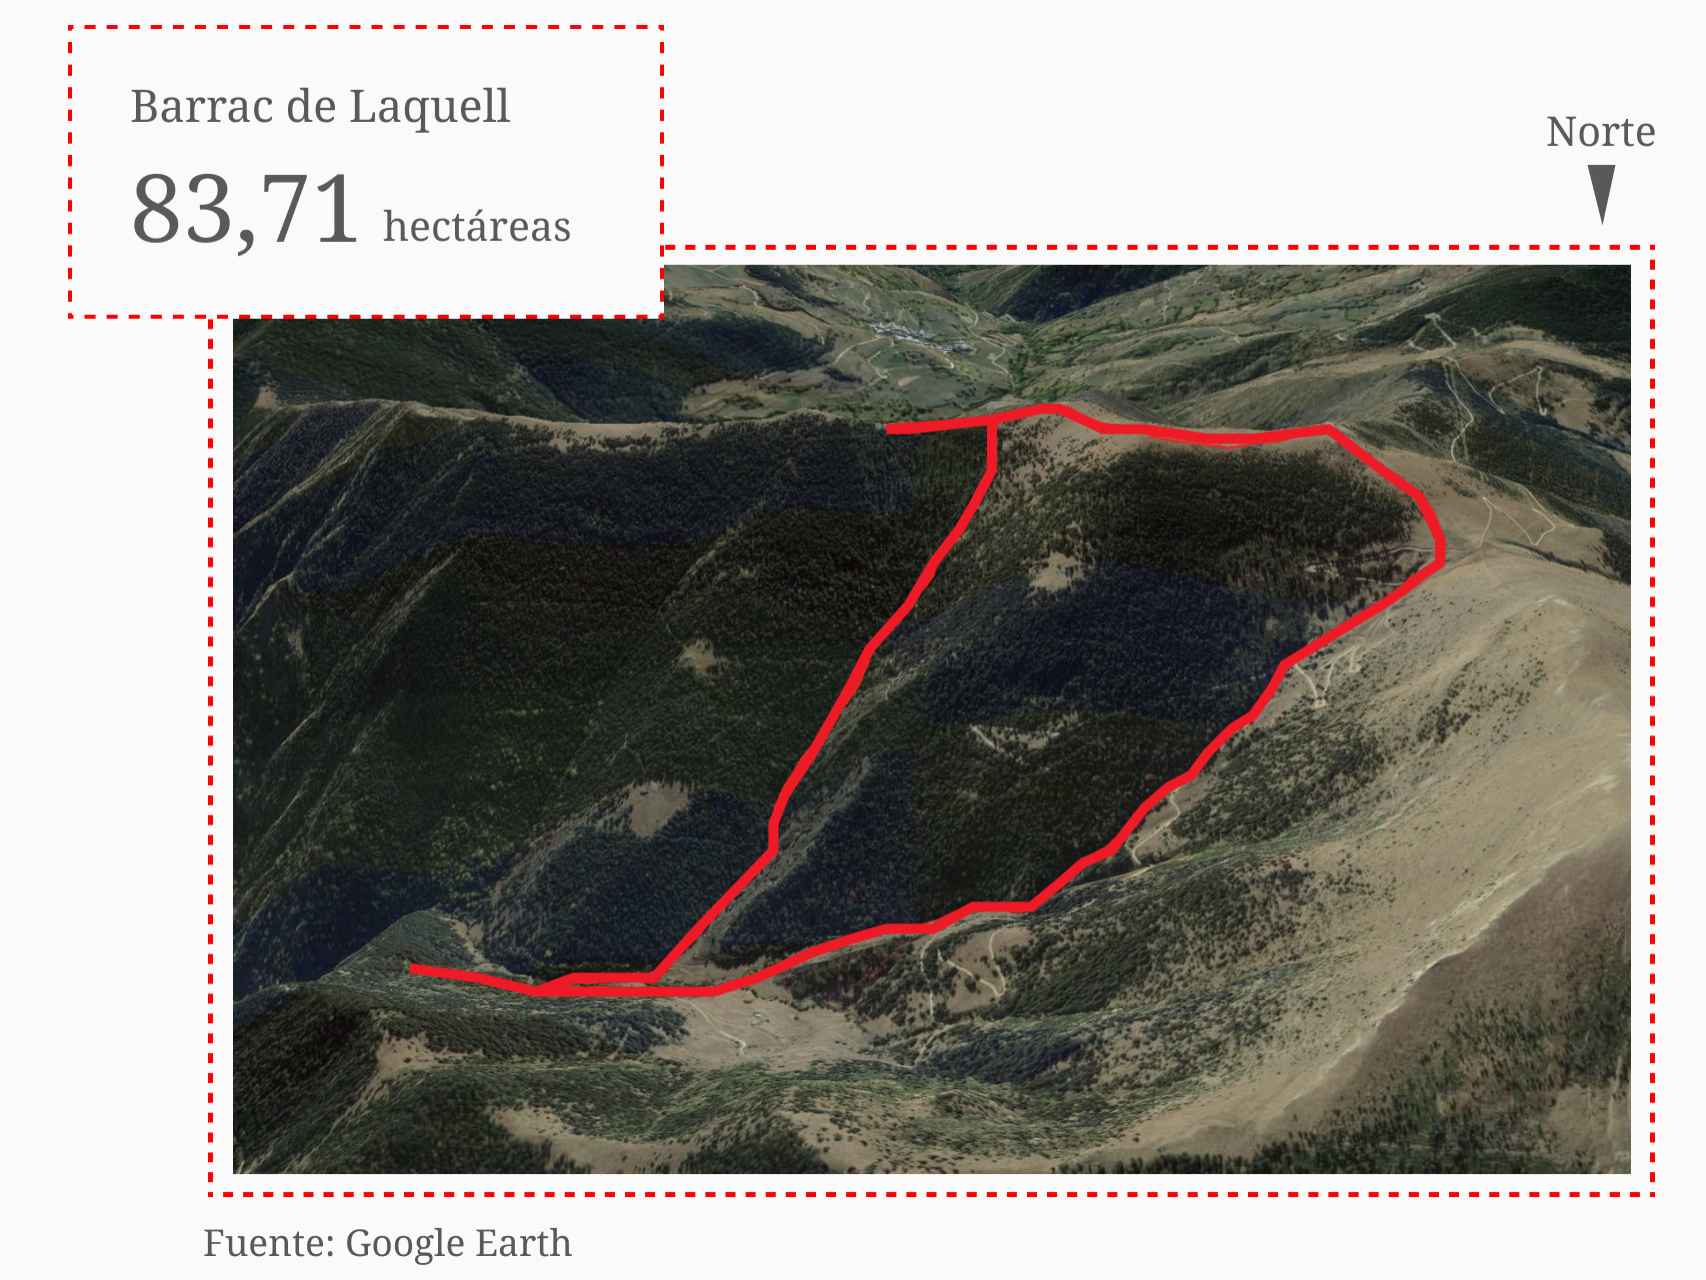 La segunda superficie es el barranco de Laquell, cerca del refugio de Francolí, con 83,71 hectáreas que ambos países definen como propias.